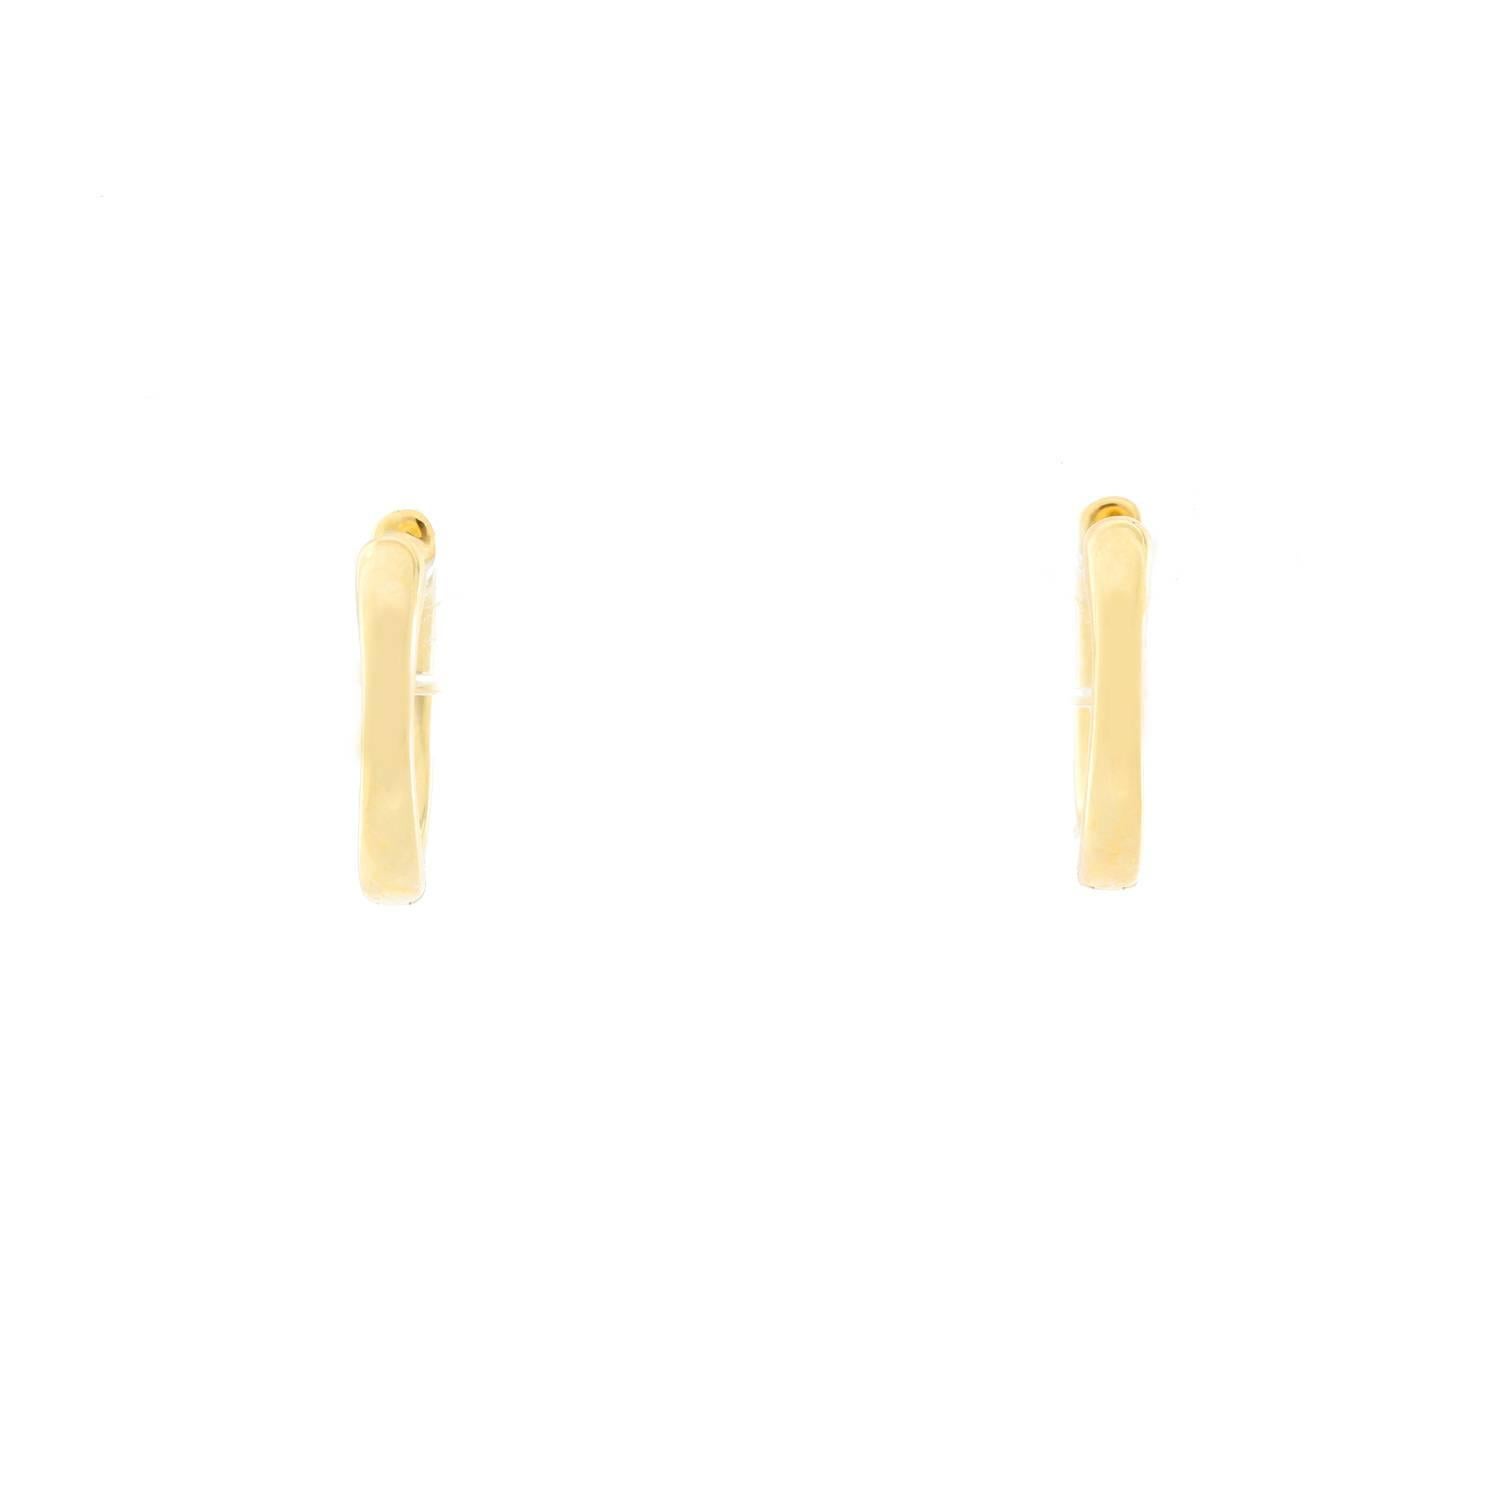 Jude Frances Pave Diamond Hoop Earrings - . 18K Yellow Gold diamond hoop earrings. Total diamong weight .6 cts. 14 mm in diameter. Total weight 2.7 grams.